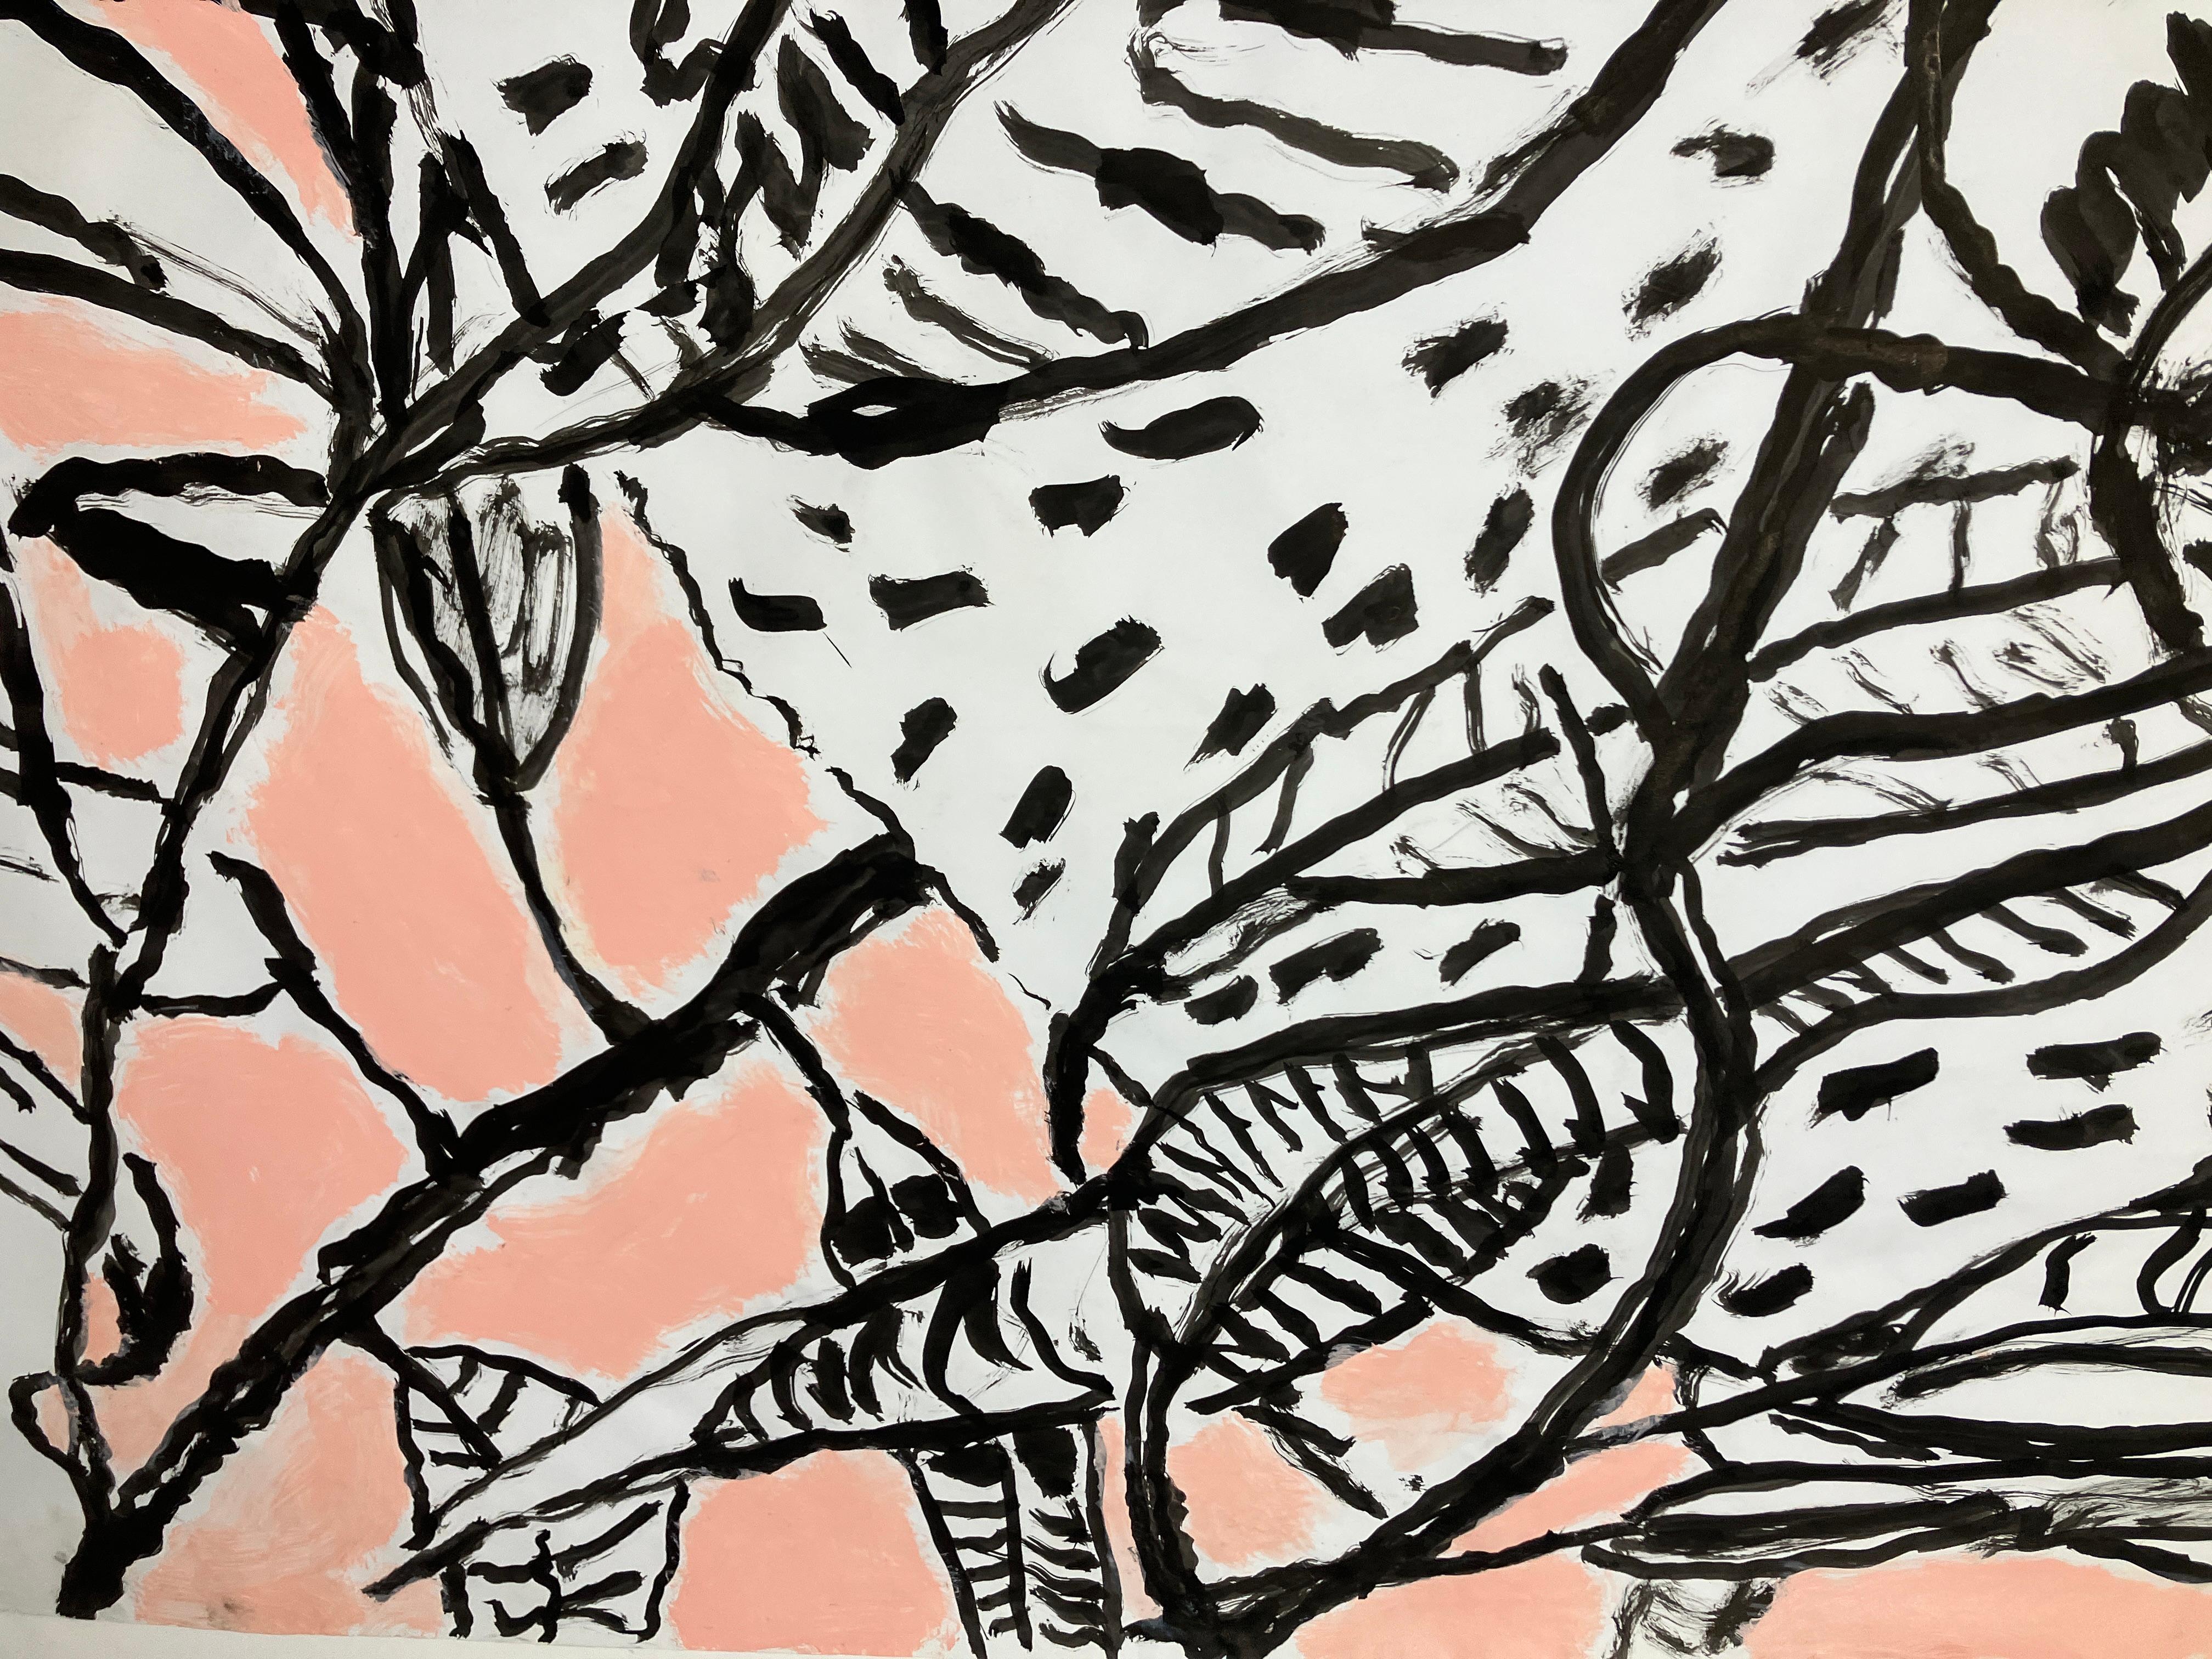 Recordando el gran artista Alberto Riano Mangos Marzo, 2014 von Celso Castro
Schwarze Farbe und Pastell auf Archivpapier
Bildgröße: 39,2 H x 28 Zoll. W 
Ungerahmt
____________
Die Werke von Celso Castro sind nicht auf ein bestimmtes Medium